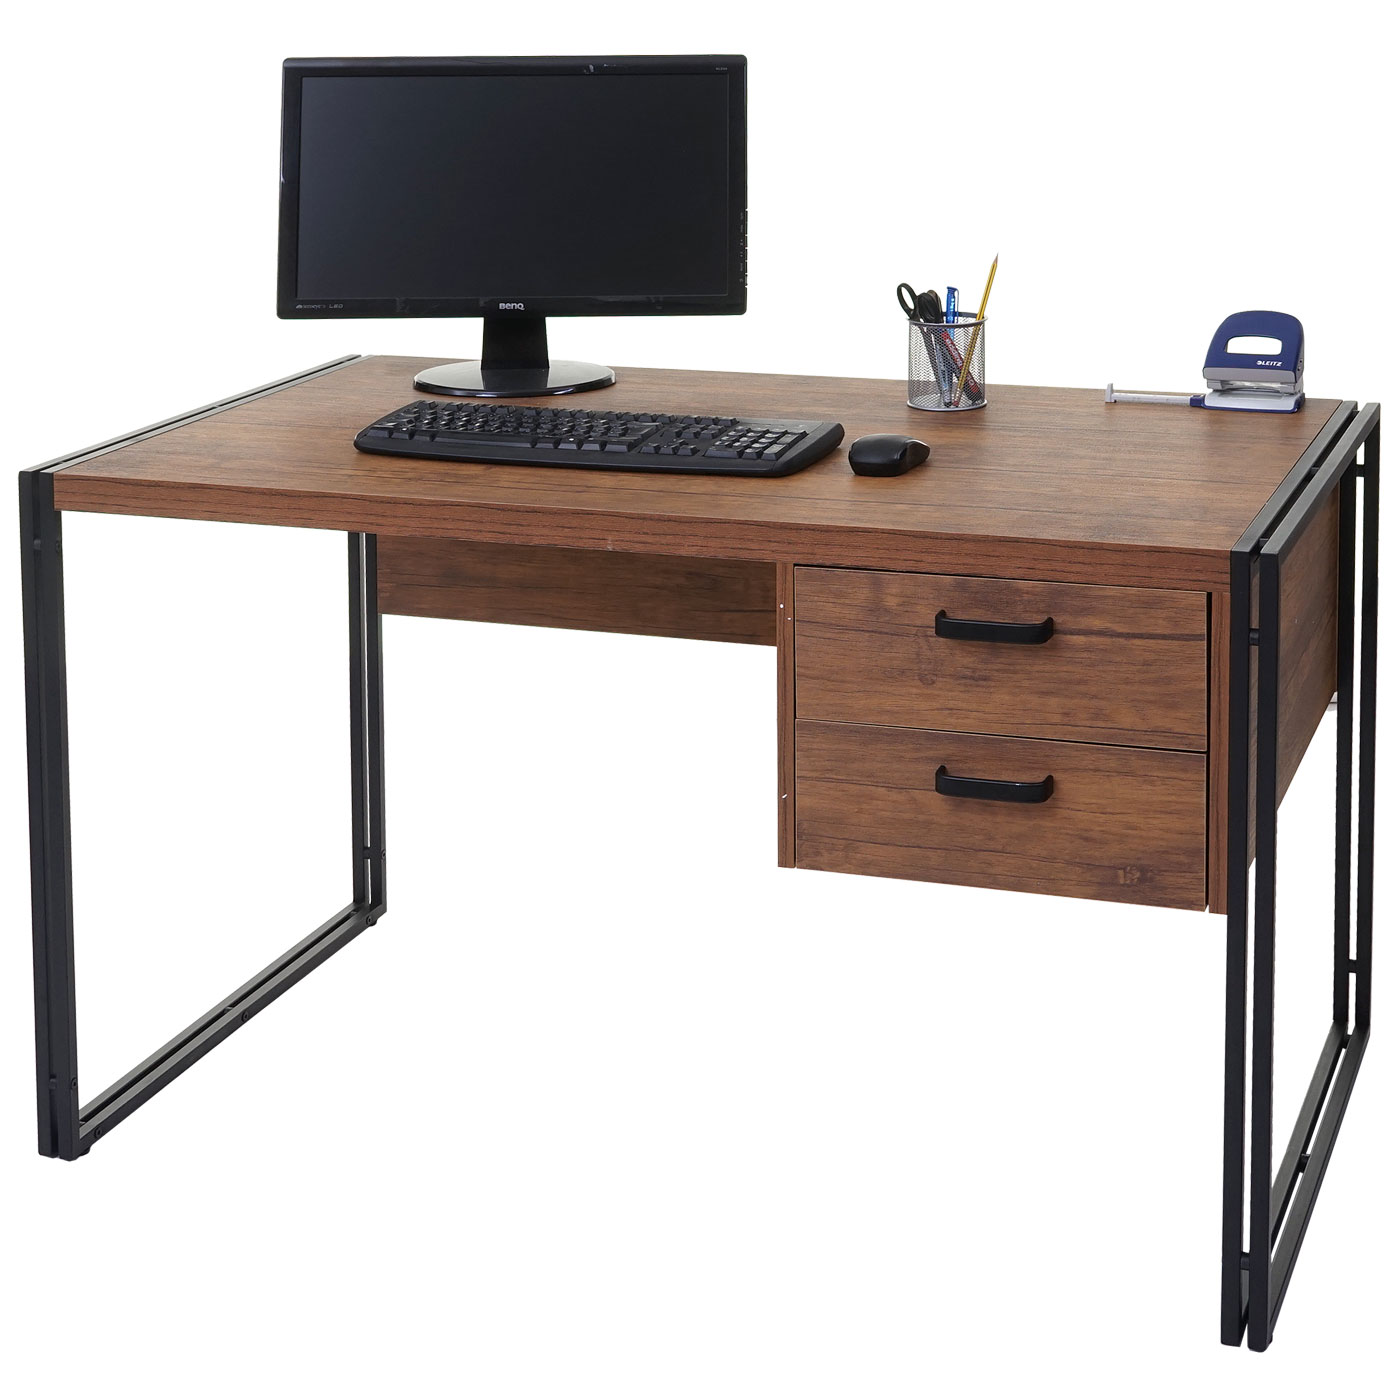 Стол 120 Activa Metal. Компьютерный стол. Письменный столик. Стол компьютерный офисный. Столы письменные производитель